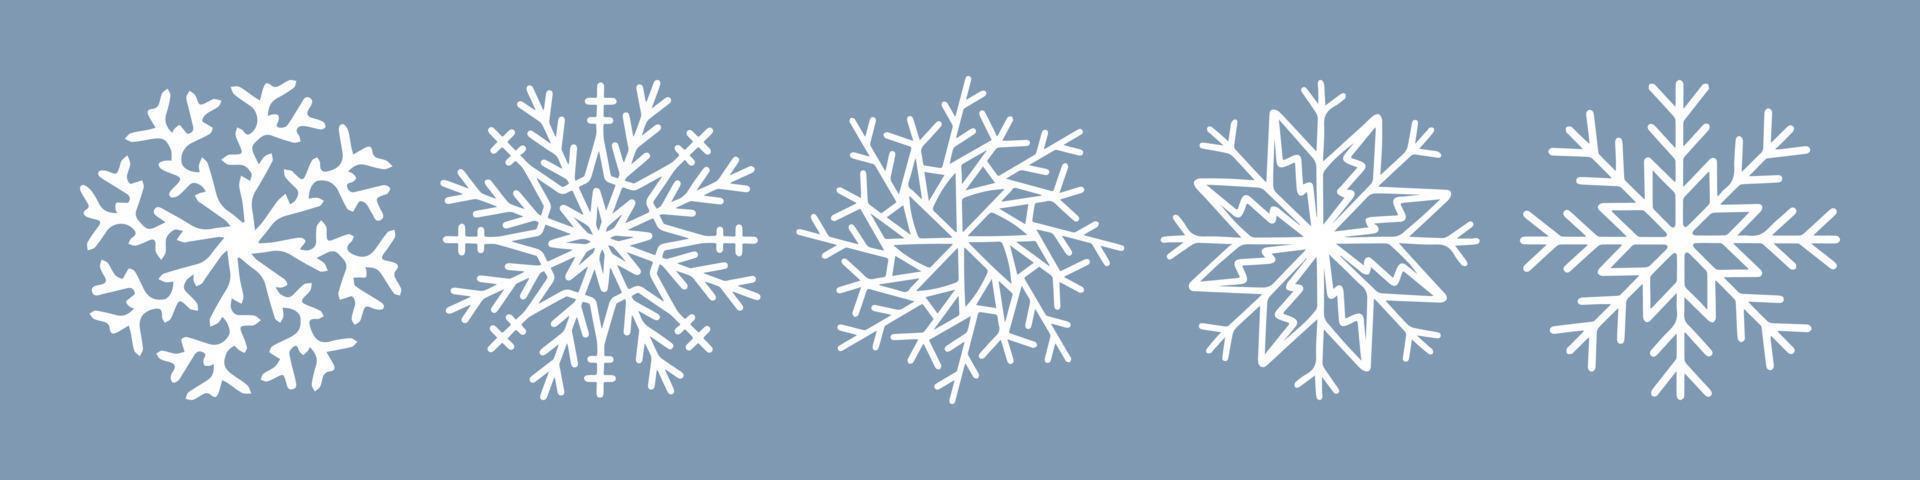 coleção de ícone de vetor de floco de neve desenhado à mão, símbolo de neve de inverno isolado no fundo branco. feliz natal e feliz ano novo elementos de tipografia. doodle ilustração vintage, cartão de felicitações.